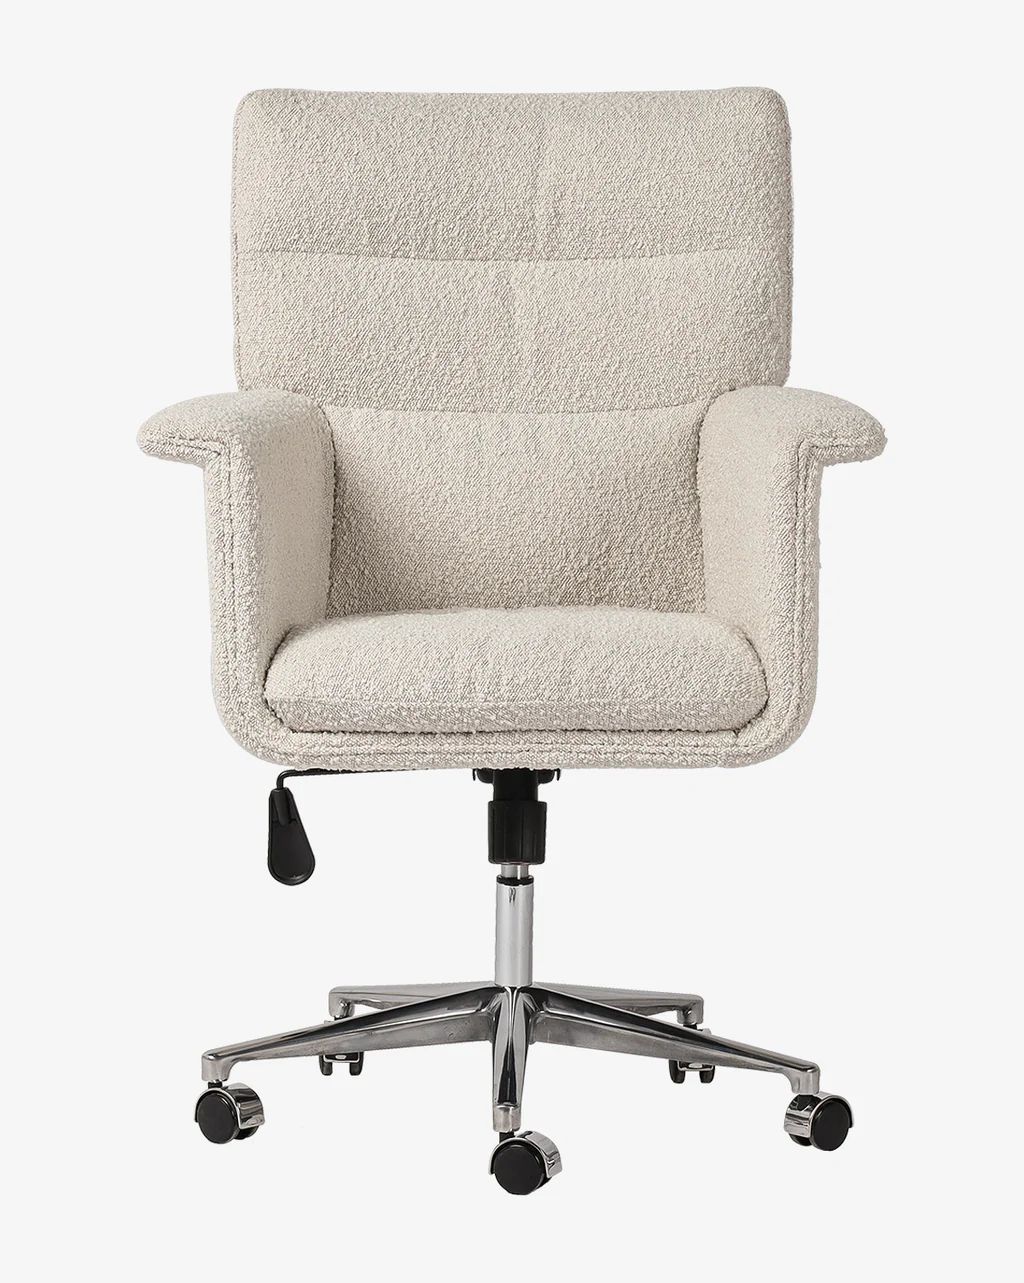 Colson Desk Chair | McGee & Co.